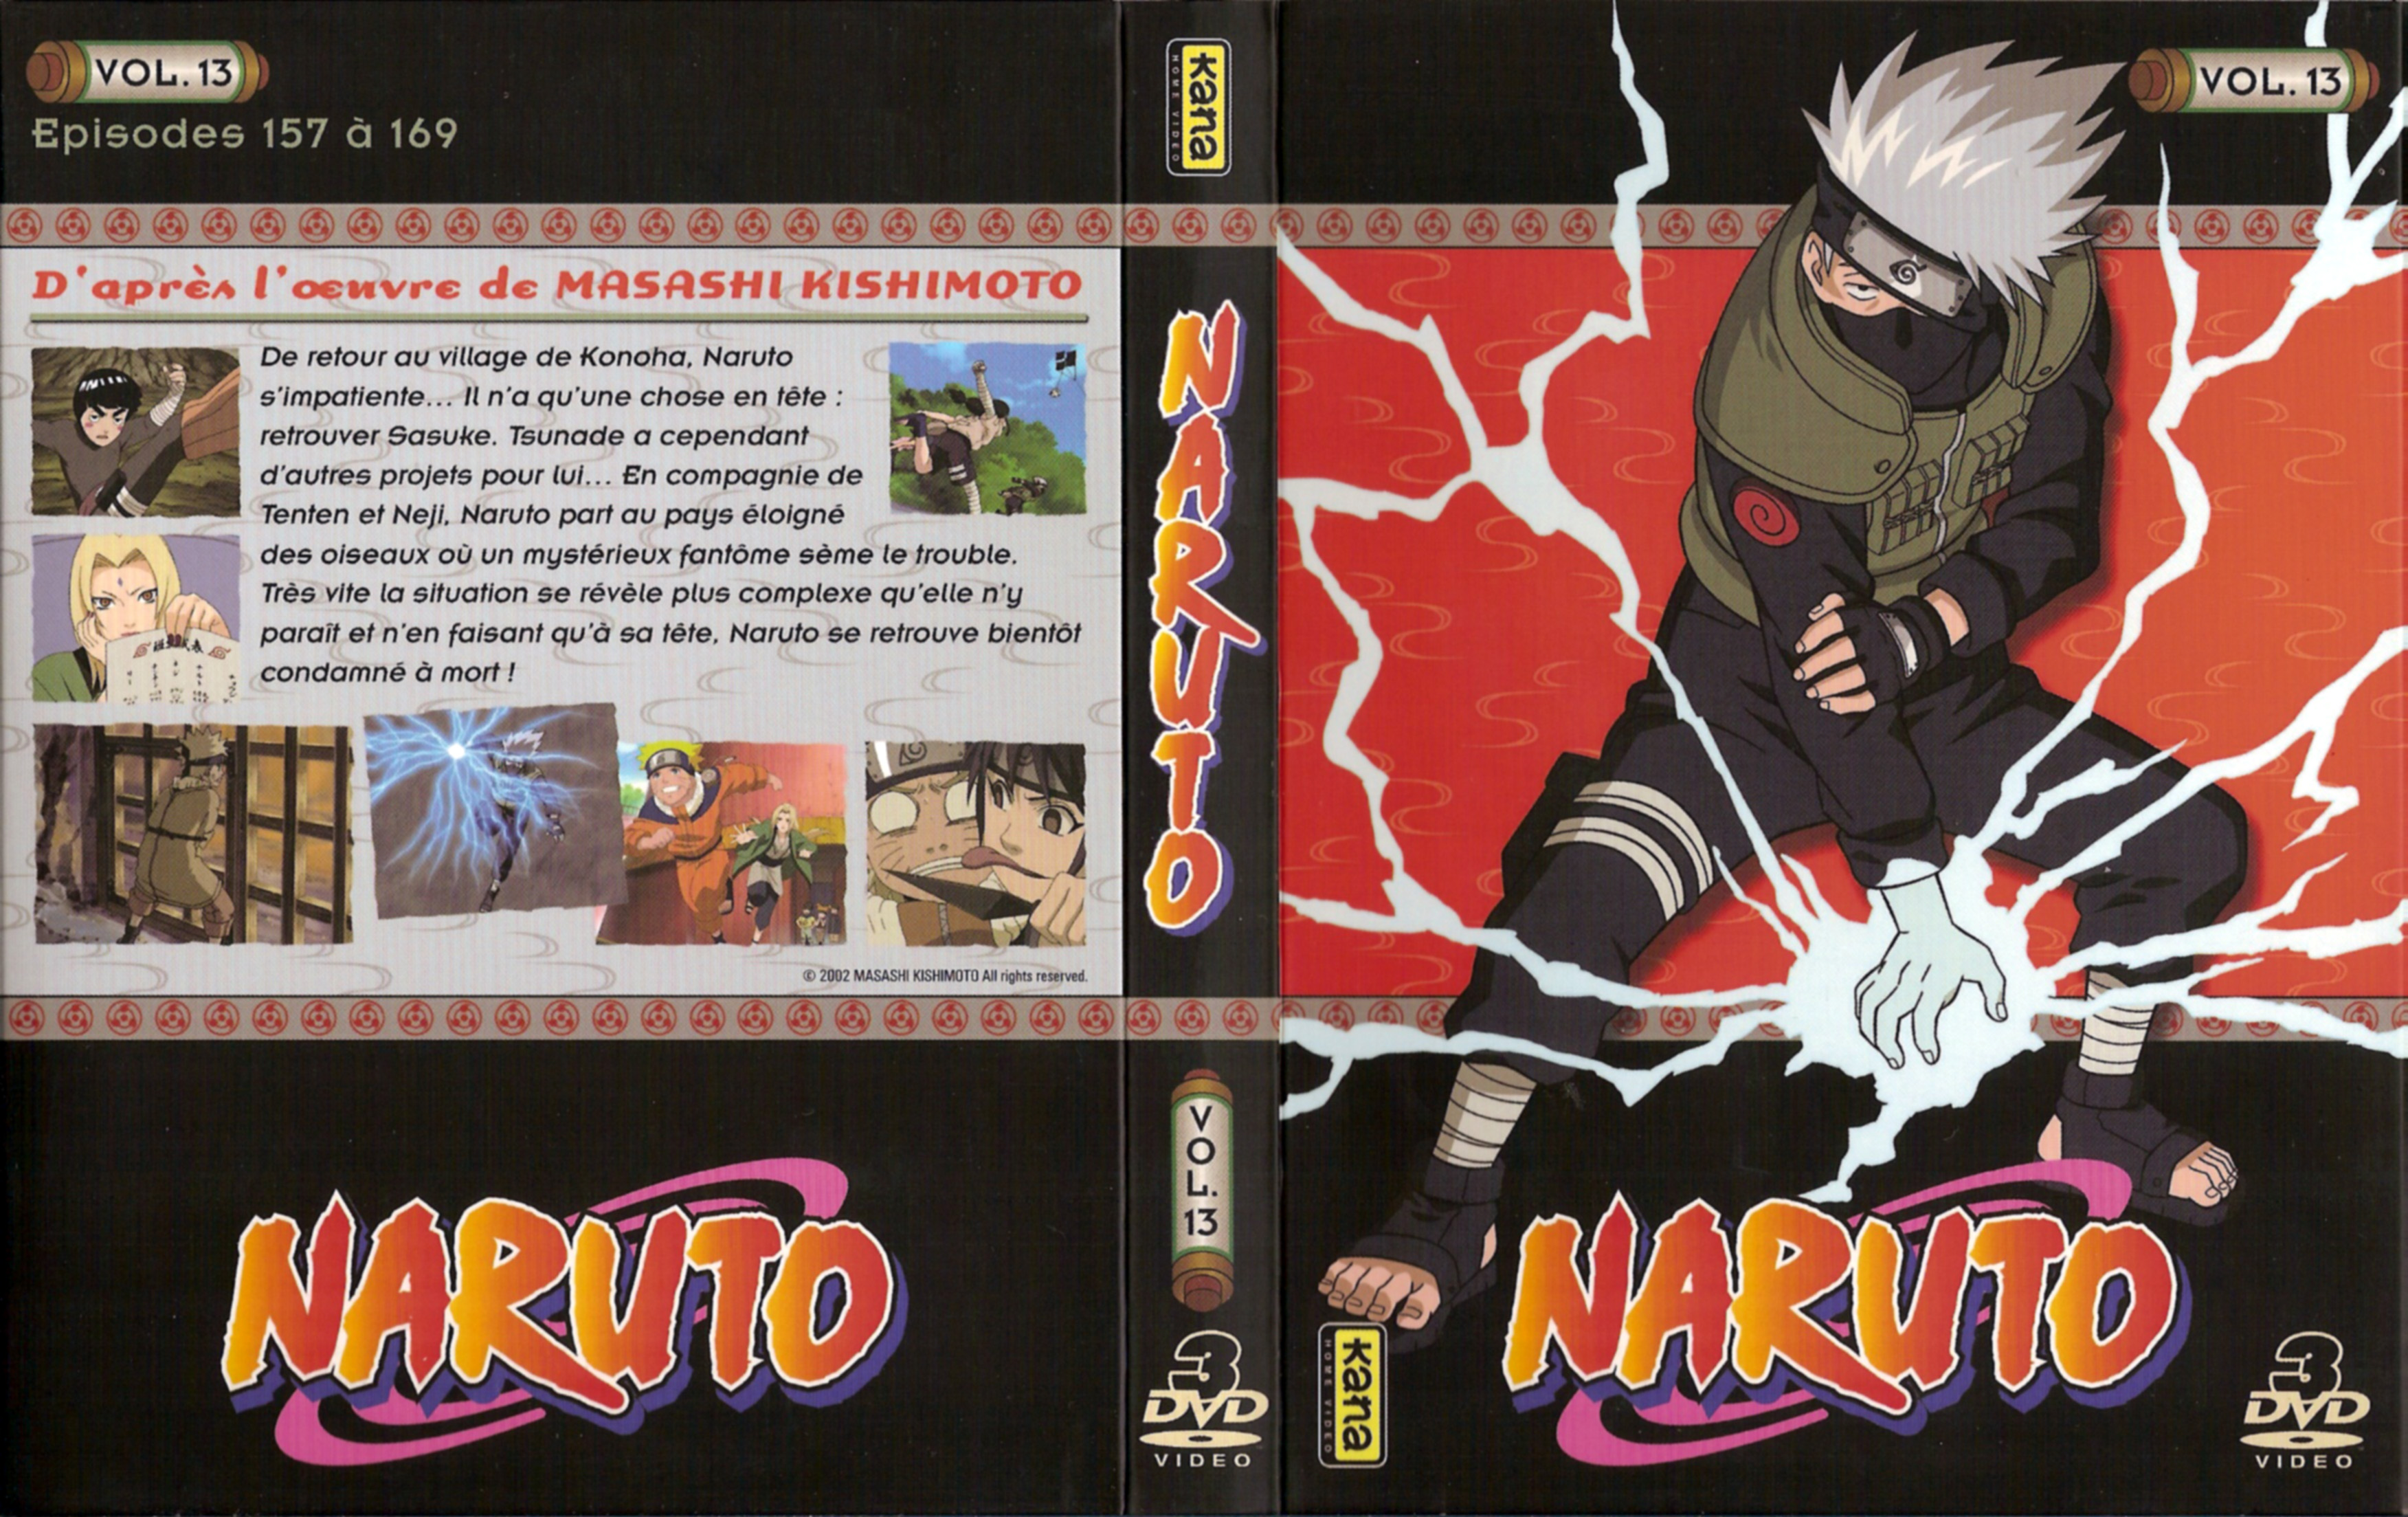 Jaquette DVD Naruto vol 13